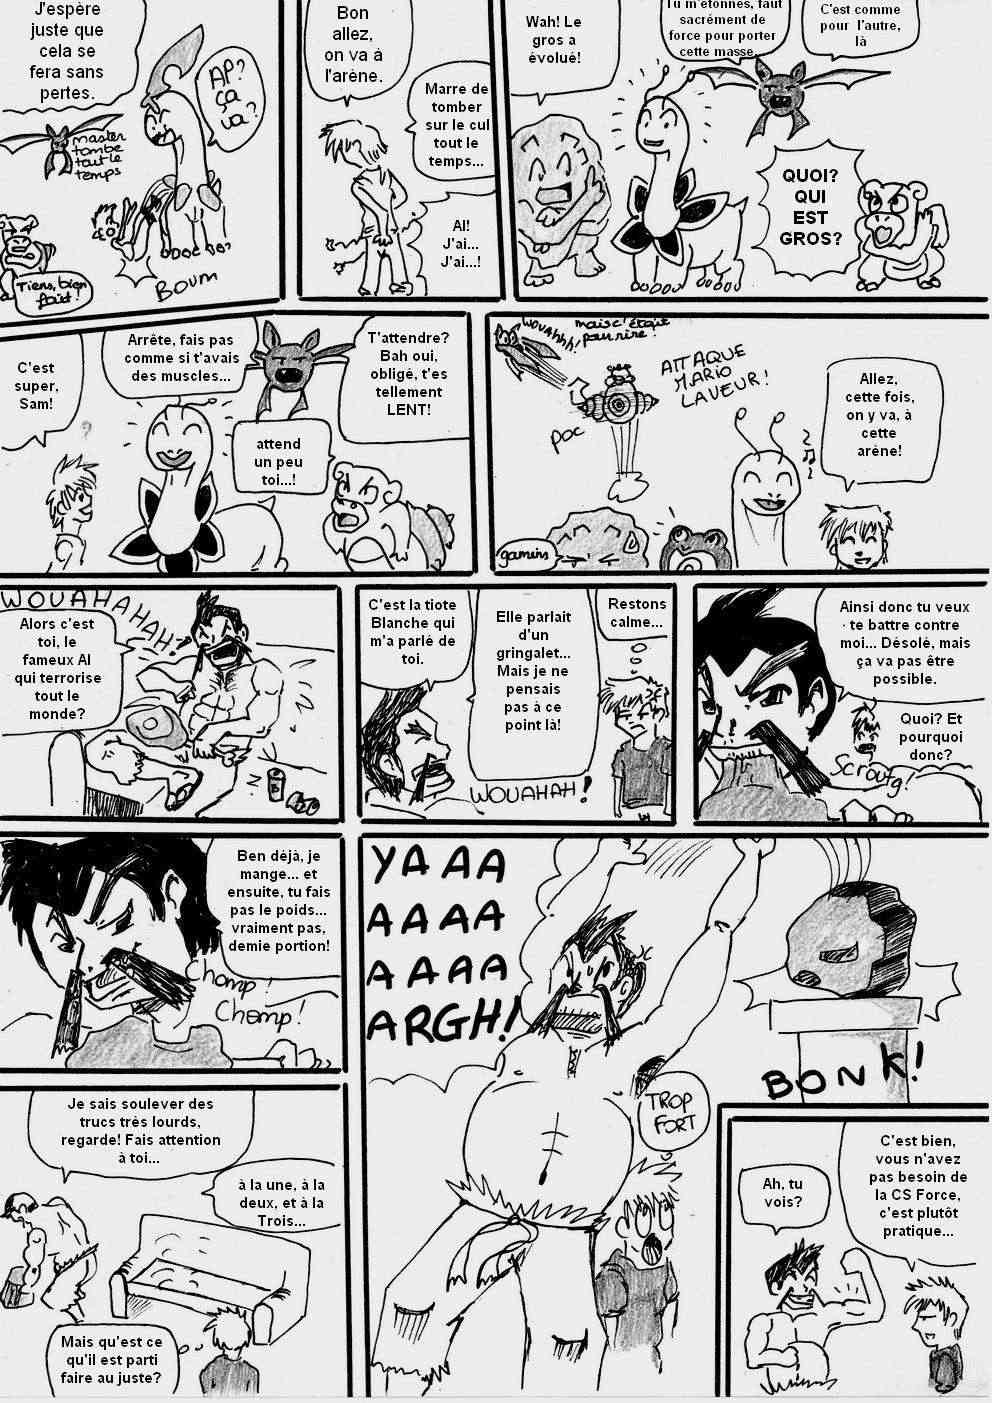 [Argent] shewolf's comic nuz - Page 2 Planch16